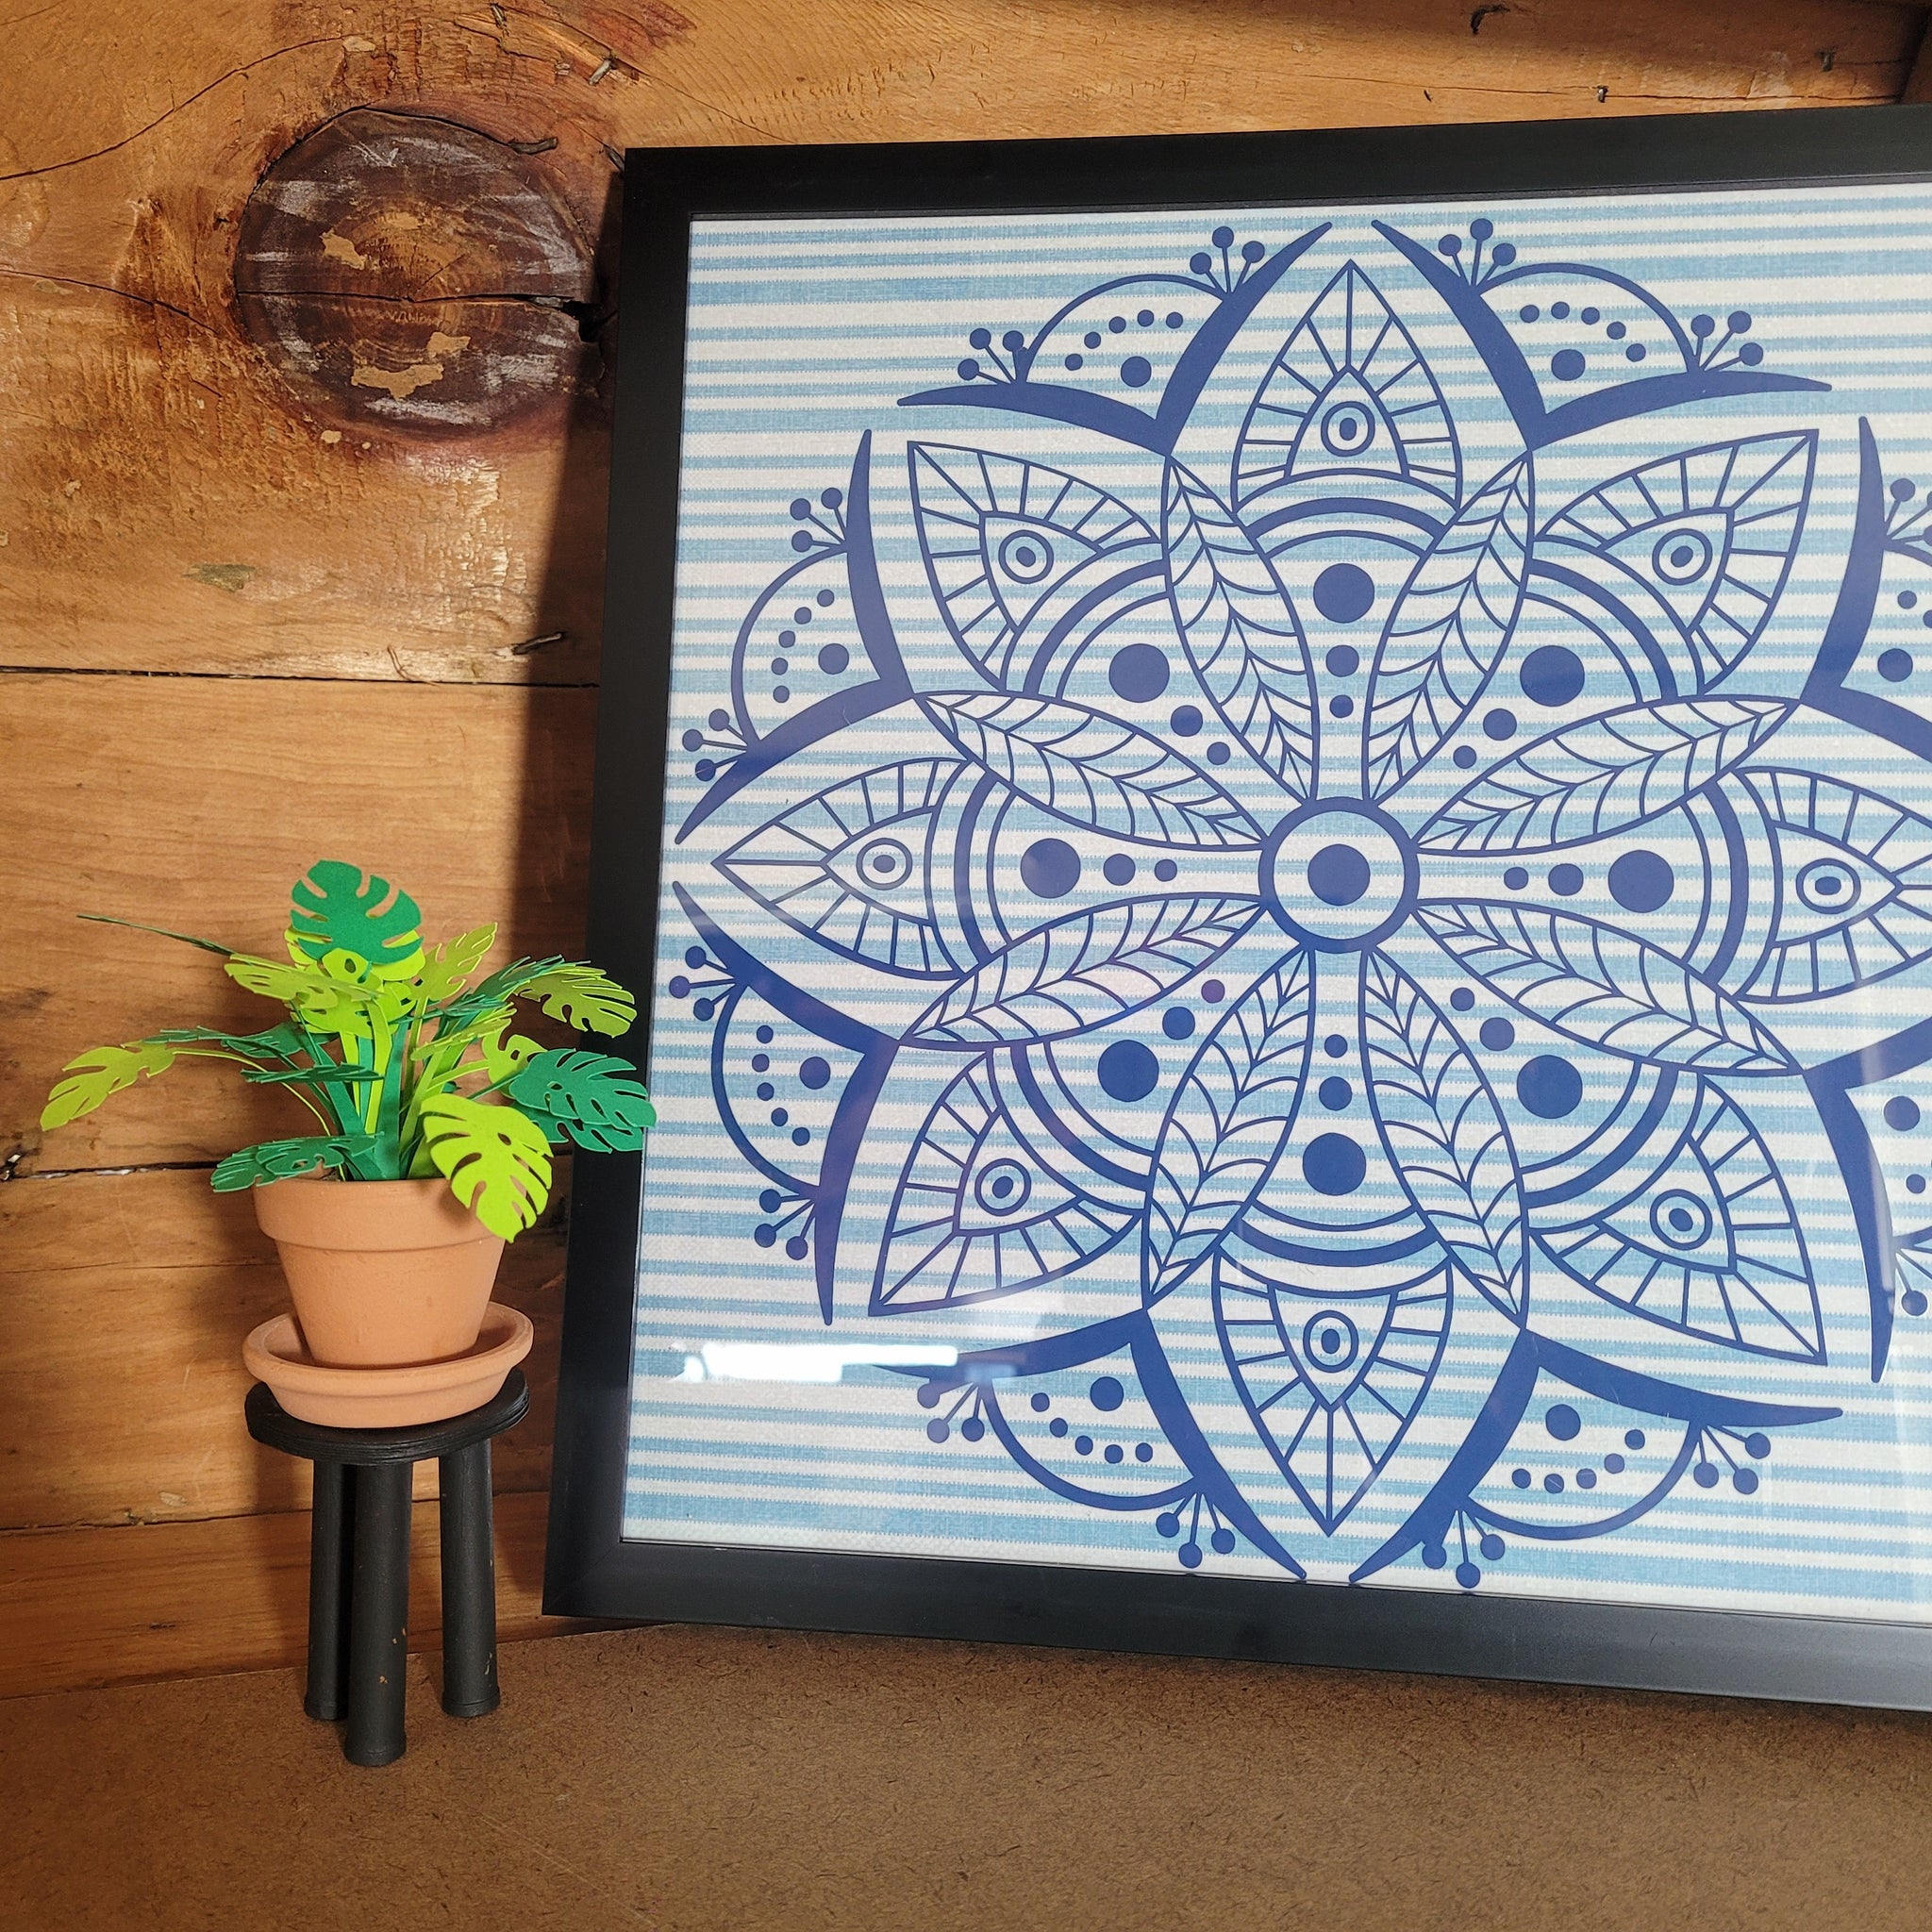 Blue and Gold Flower Filled Vase Frame, Handmade Paper Flowers – Crystal  Compass Design